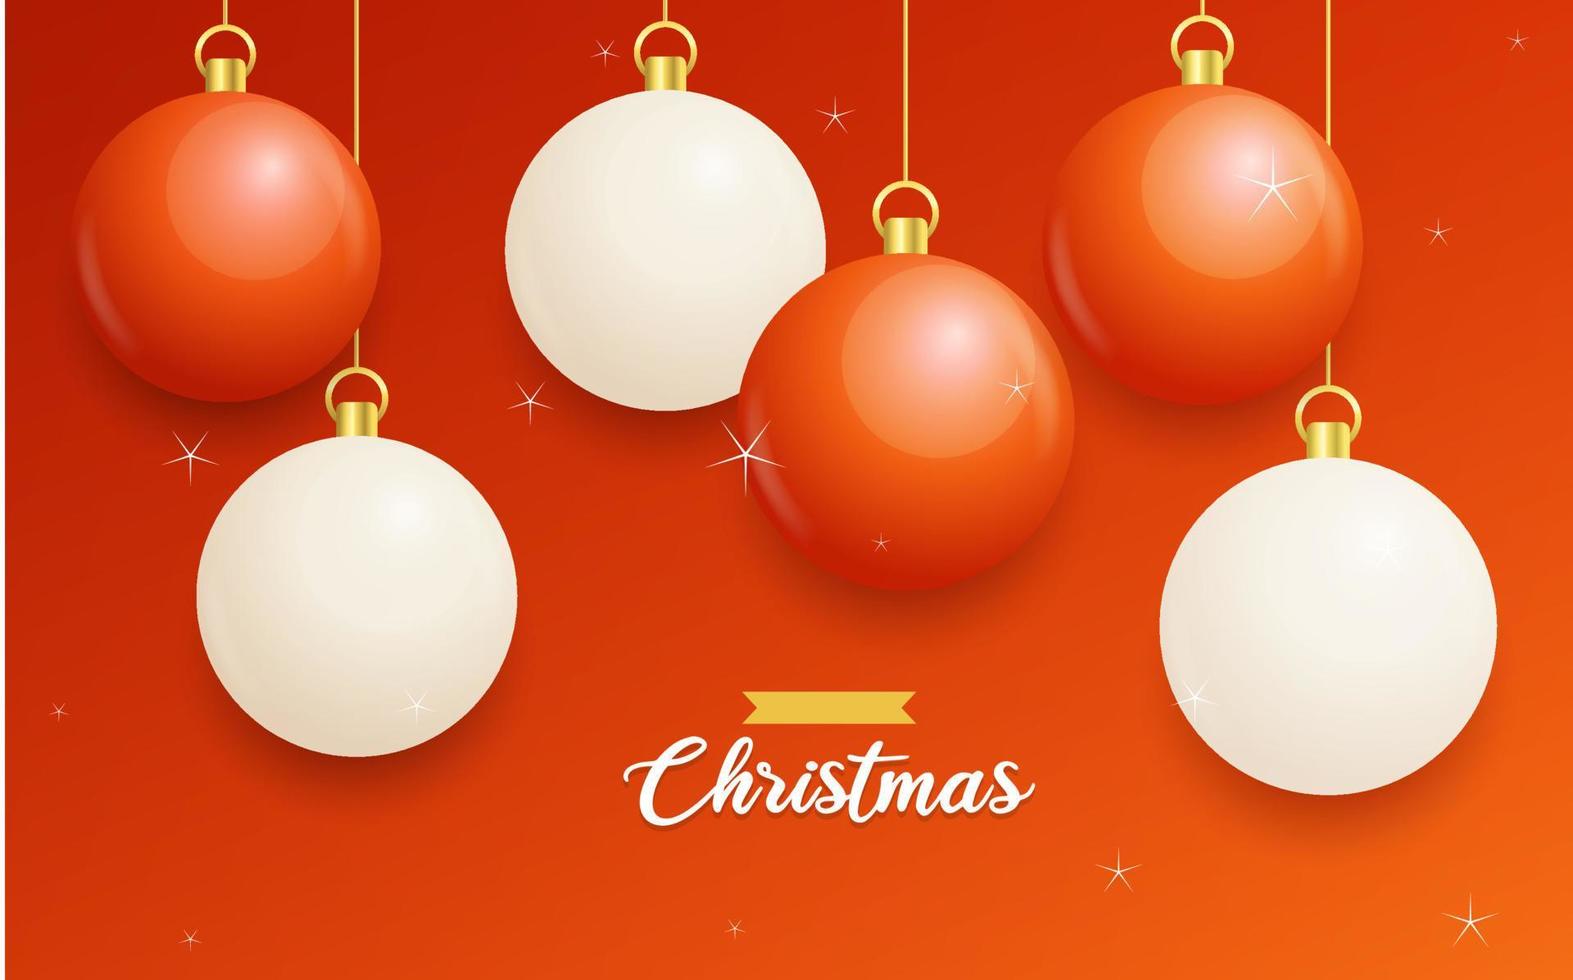 feliz navidad fondo rojo con bolas colgantes blancas y rojas. carteles horizontales de navidad. tarjetas de felicitación vector